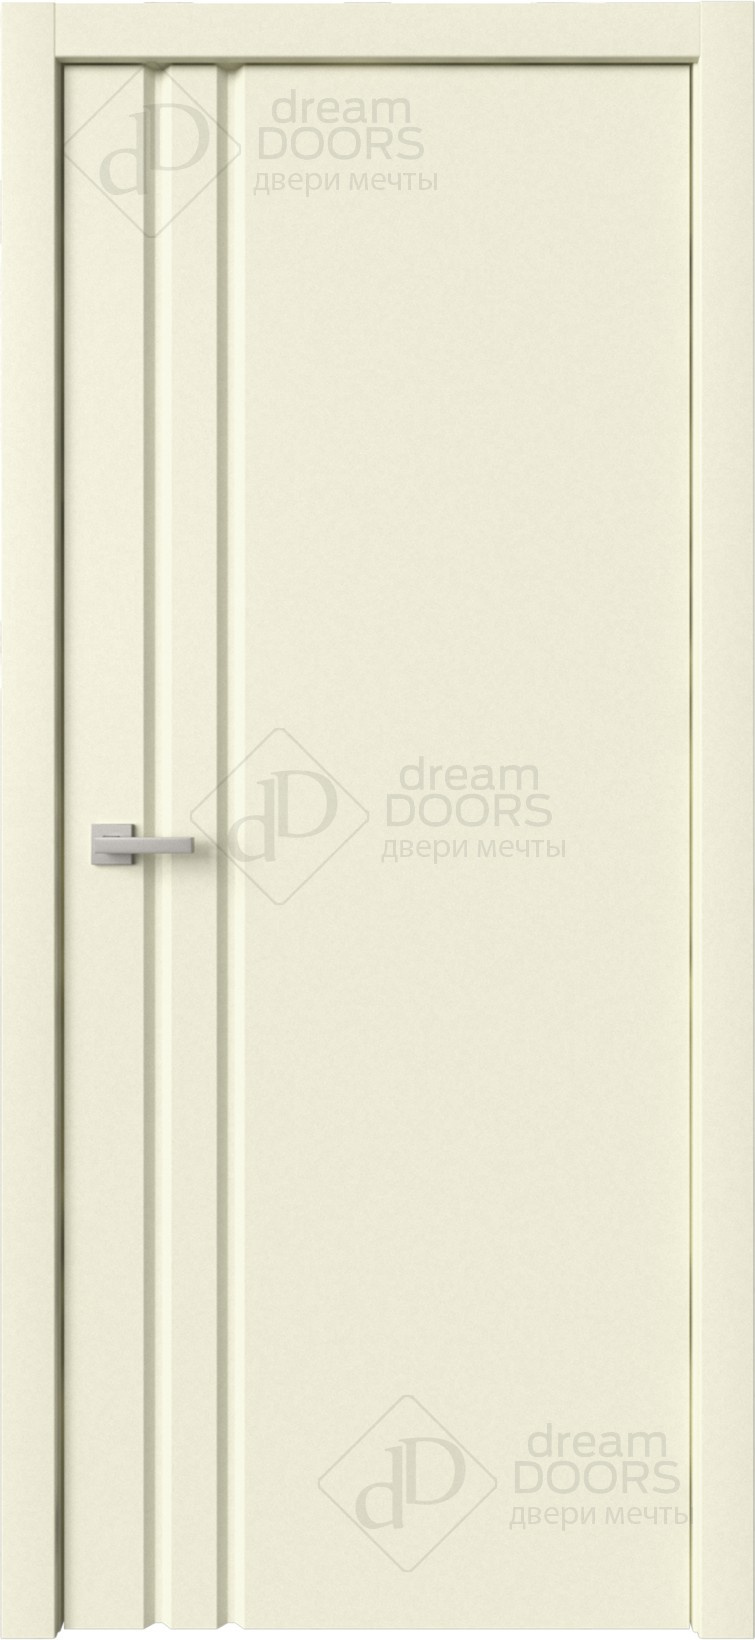 Dream Doors Межкомнатная дверь Стиль 1 узкое ПГ, арт. 6269 - фото №6